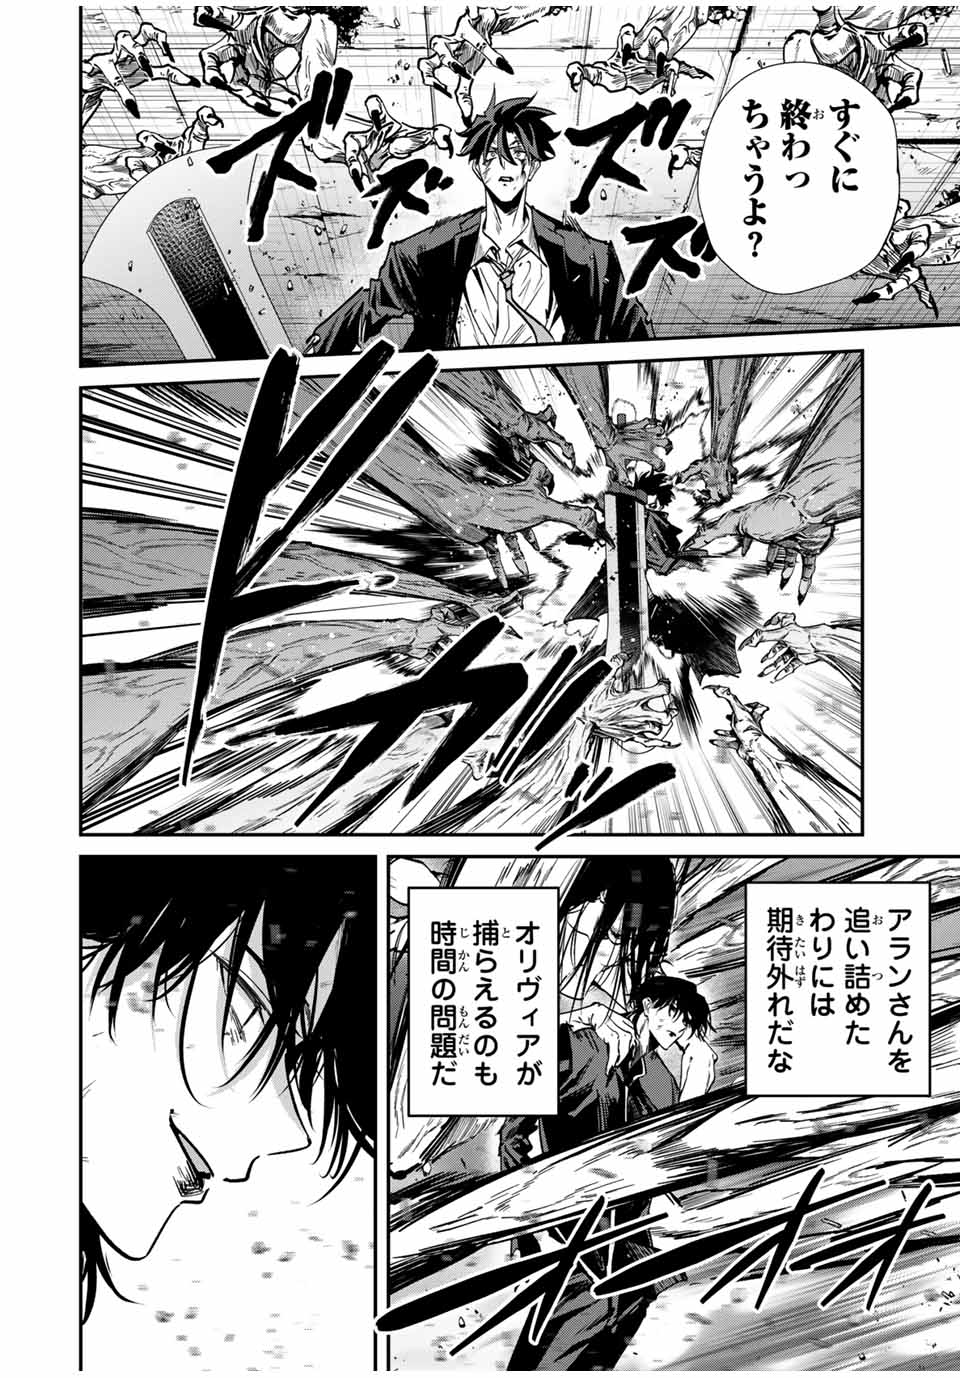 Kono Sekai ga Izure Horobu Koto wo, Ore dake ga Shitte Iru - Chapter 67 - Page 6